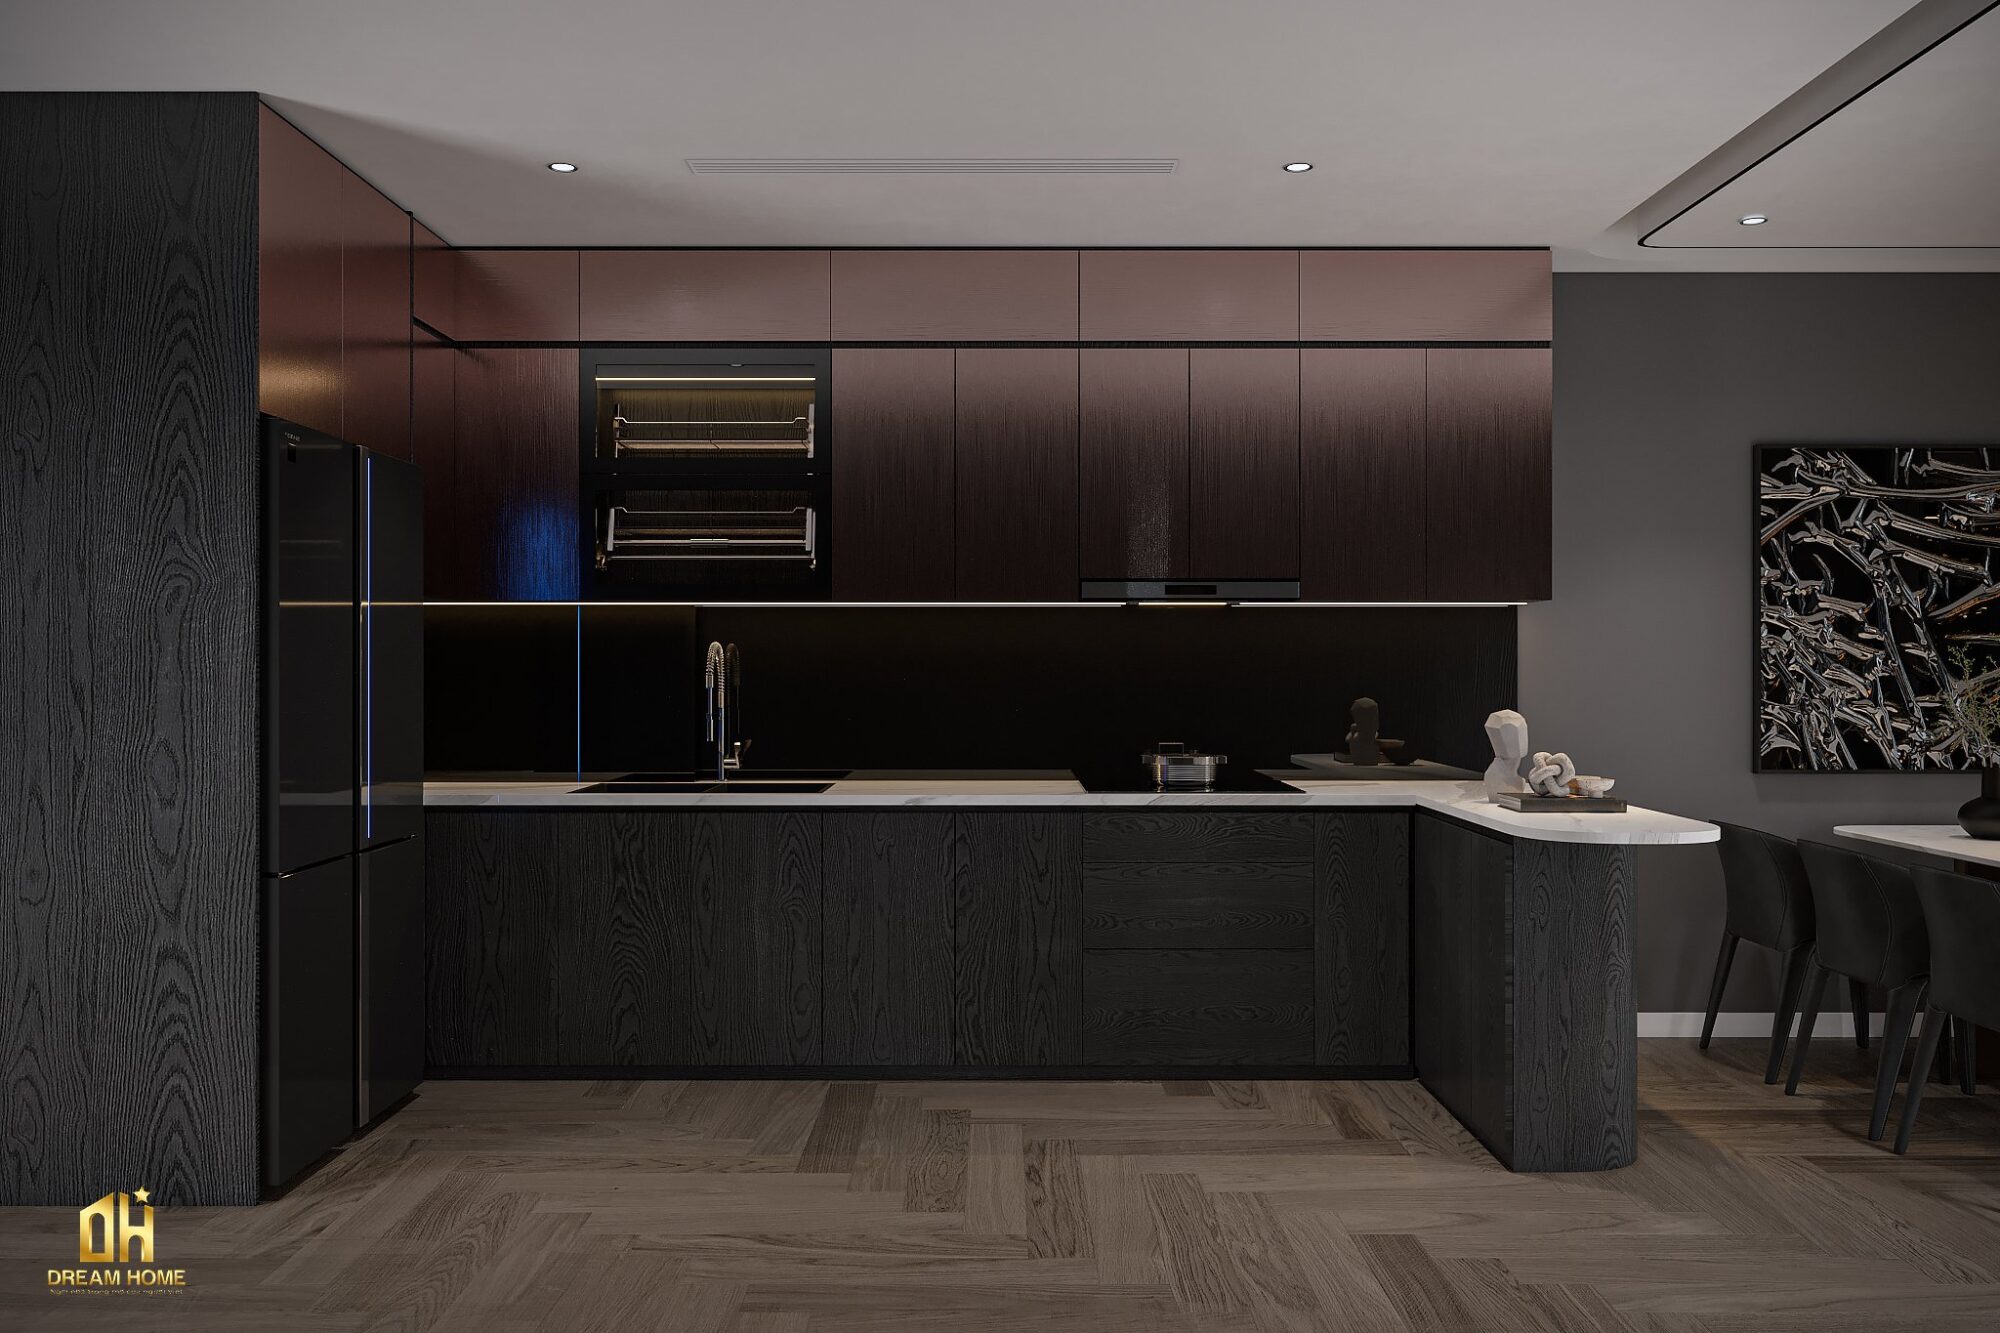 Sự kết hợp giữa màu sơn đen và vân gỗ mang lại sự độc đáo và phá cách cho không gian nhà bếp.